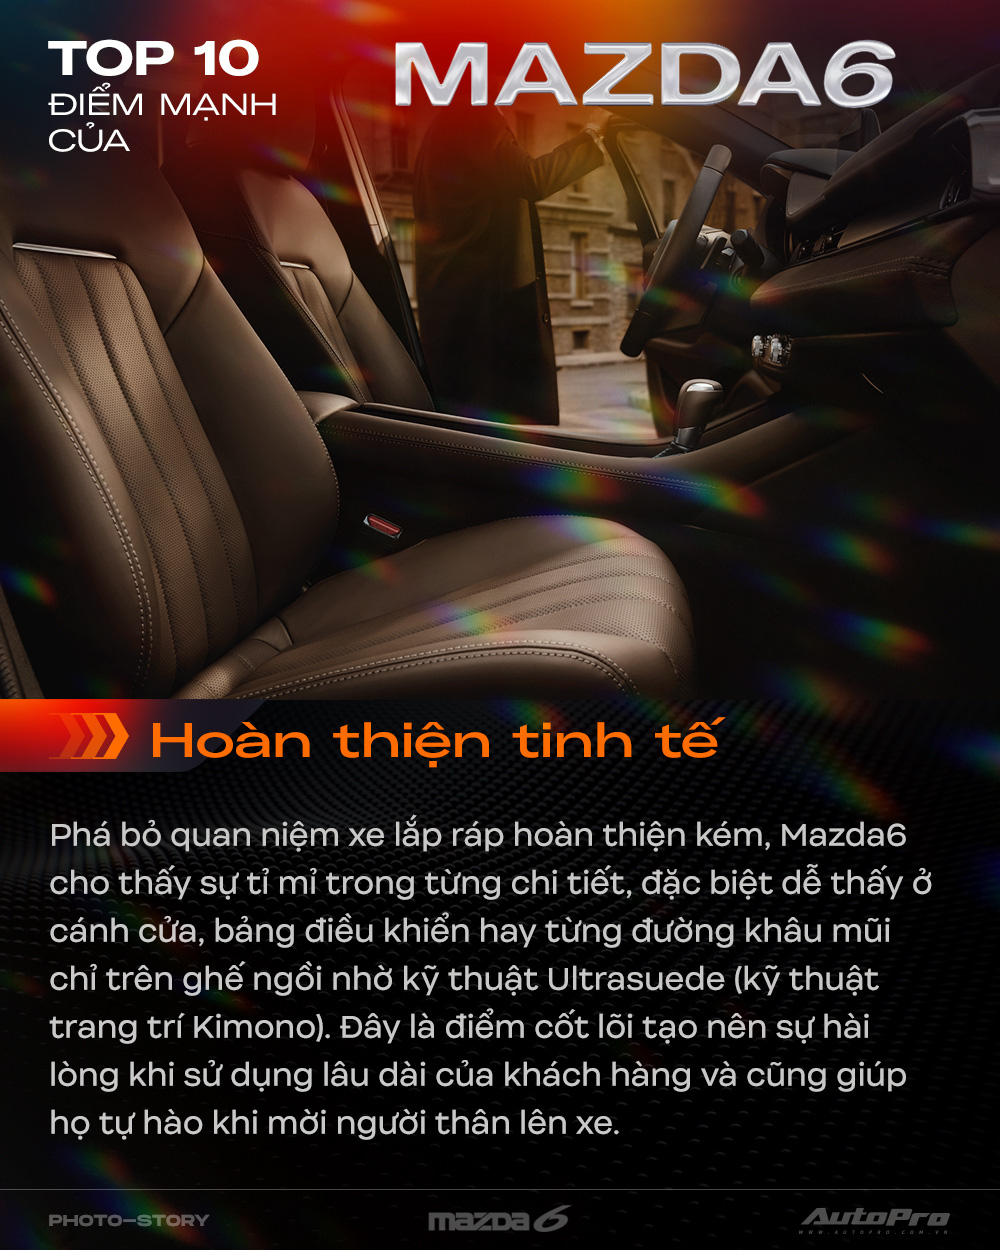 10 điểm giúp Mazda6 mới thuyết phục khách hàng Việt Nam - Ảnh 3.